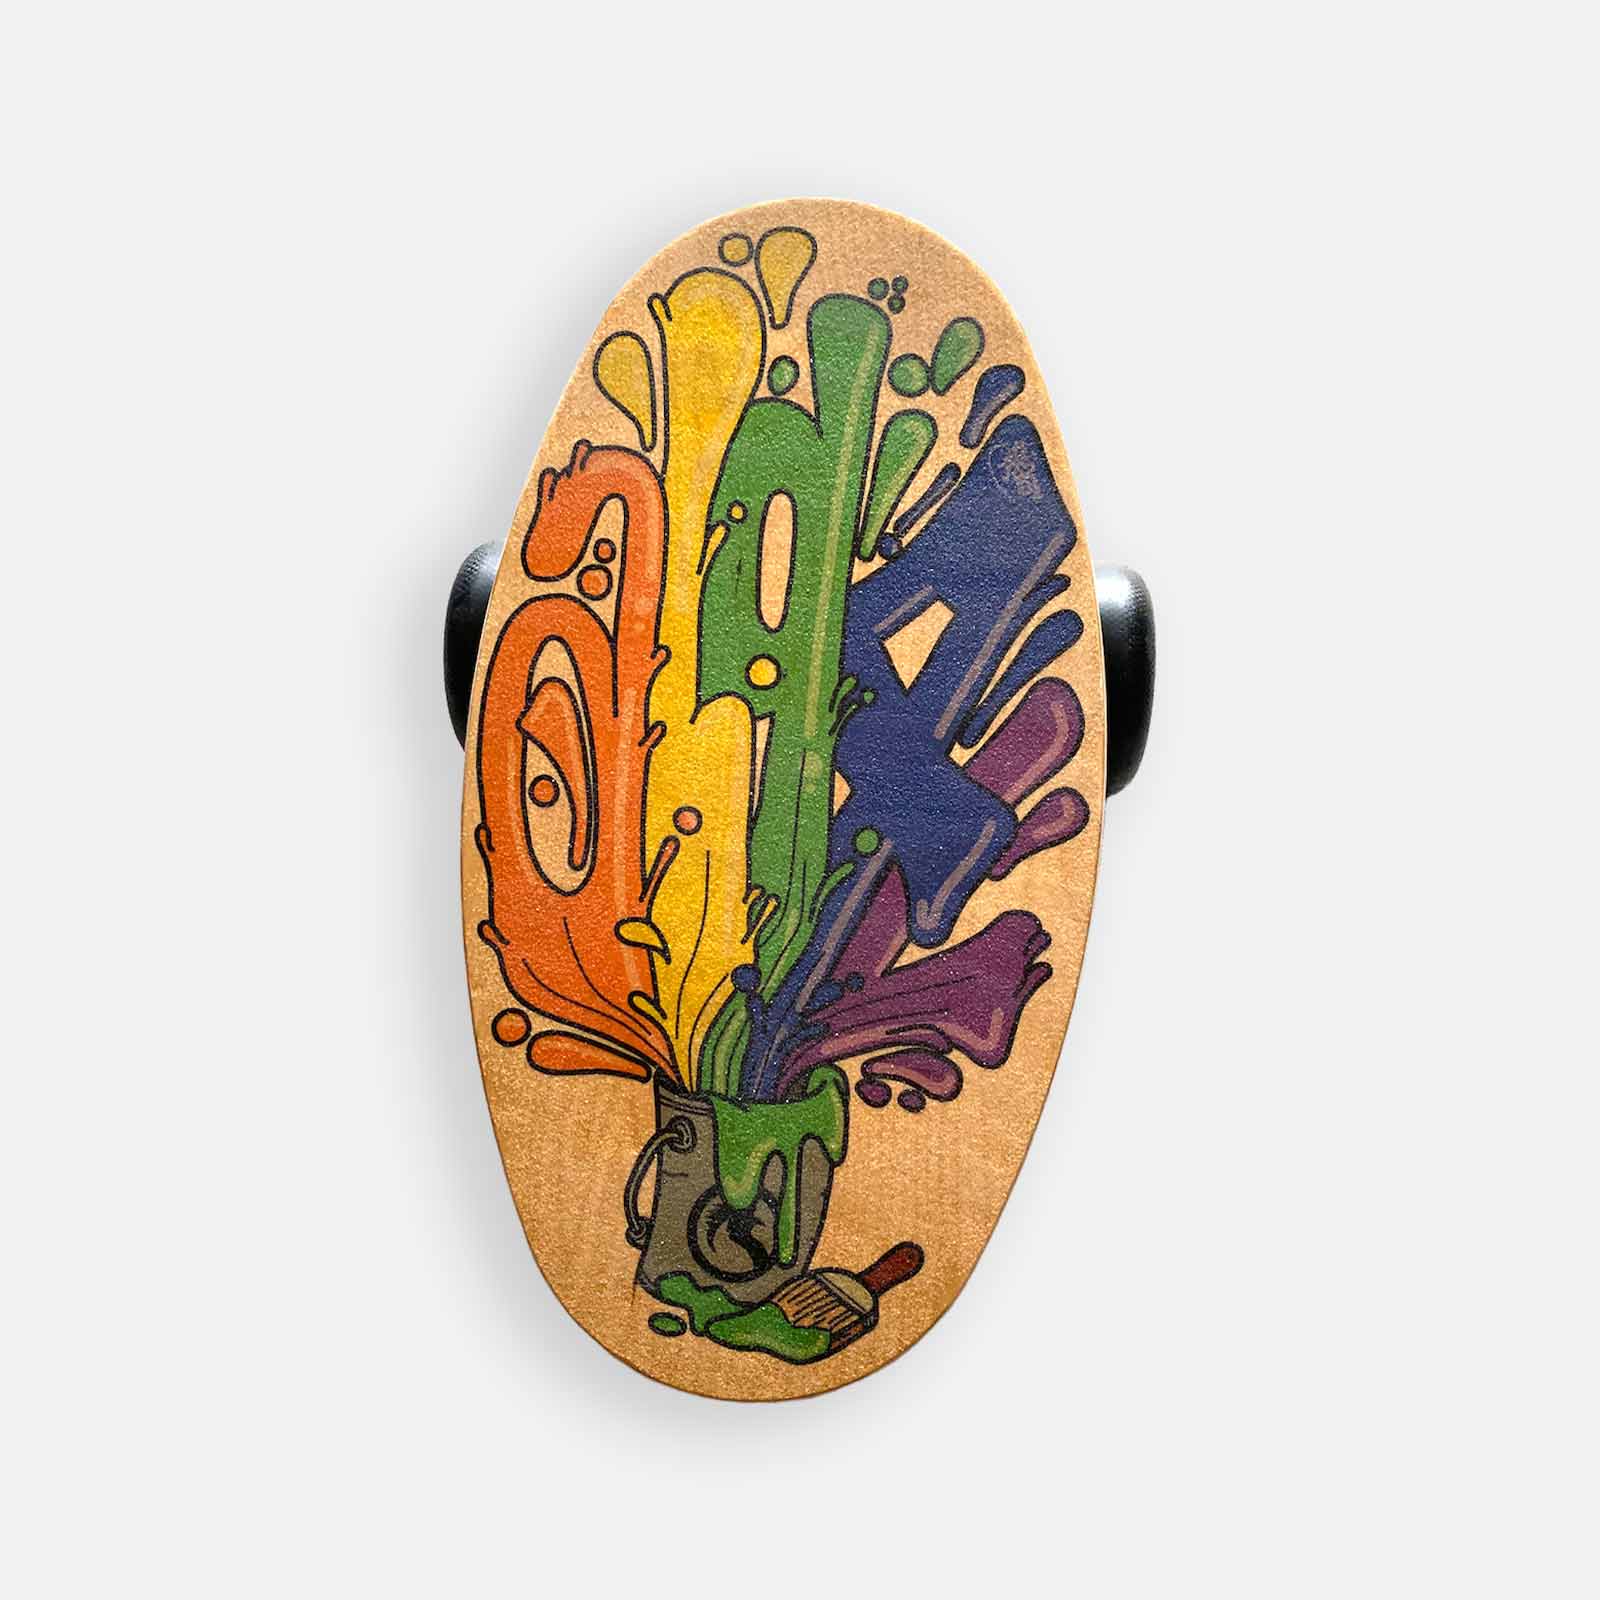 balance board eggy con forma ovale di algal board - disegno con schizzi di vernice - adatta per sport palestra equilibrio yoga surf